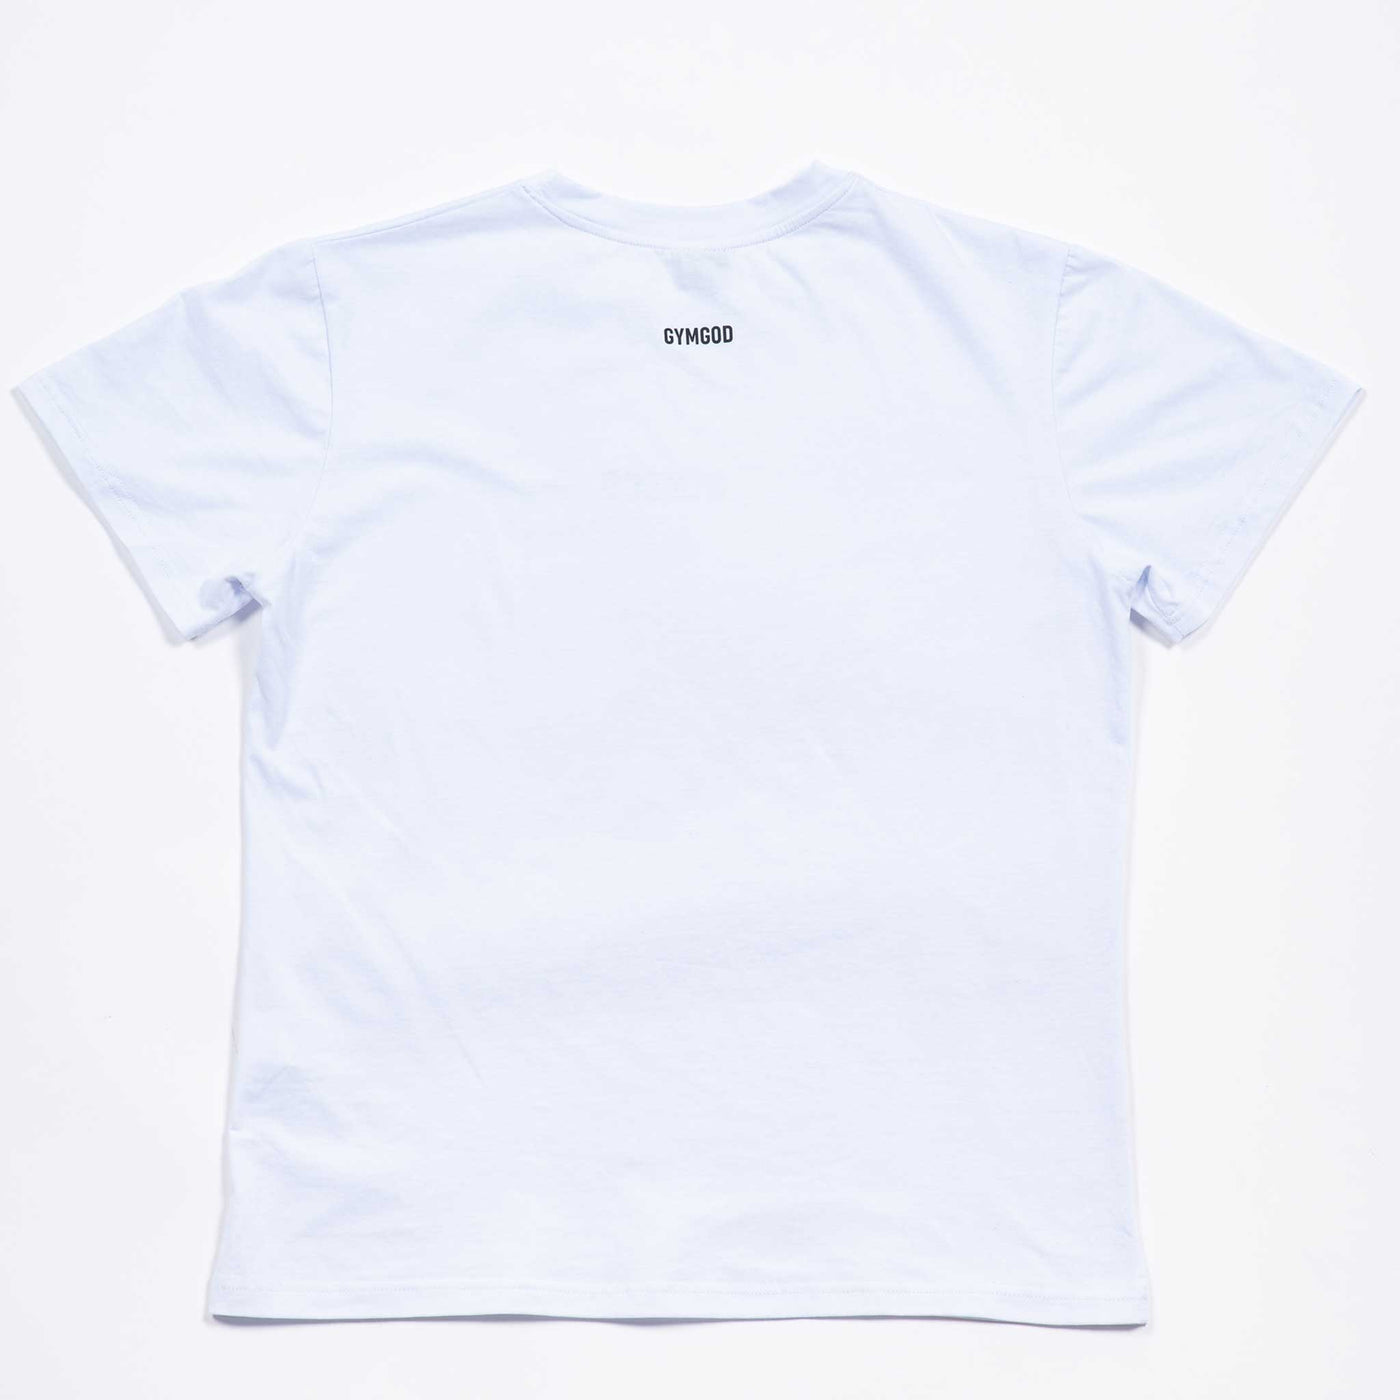 0016. Training T-Shirt - White